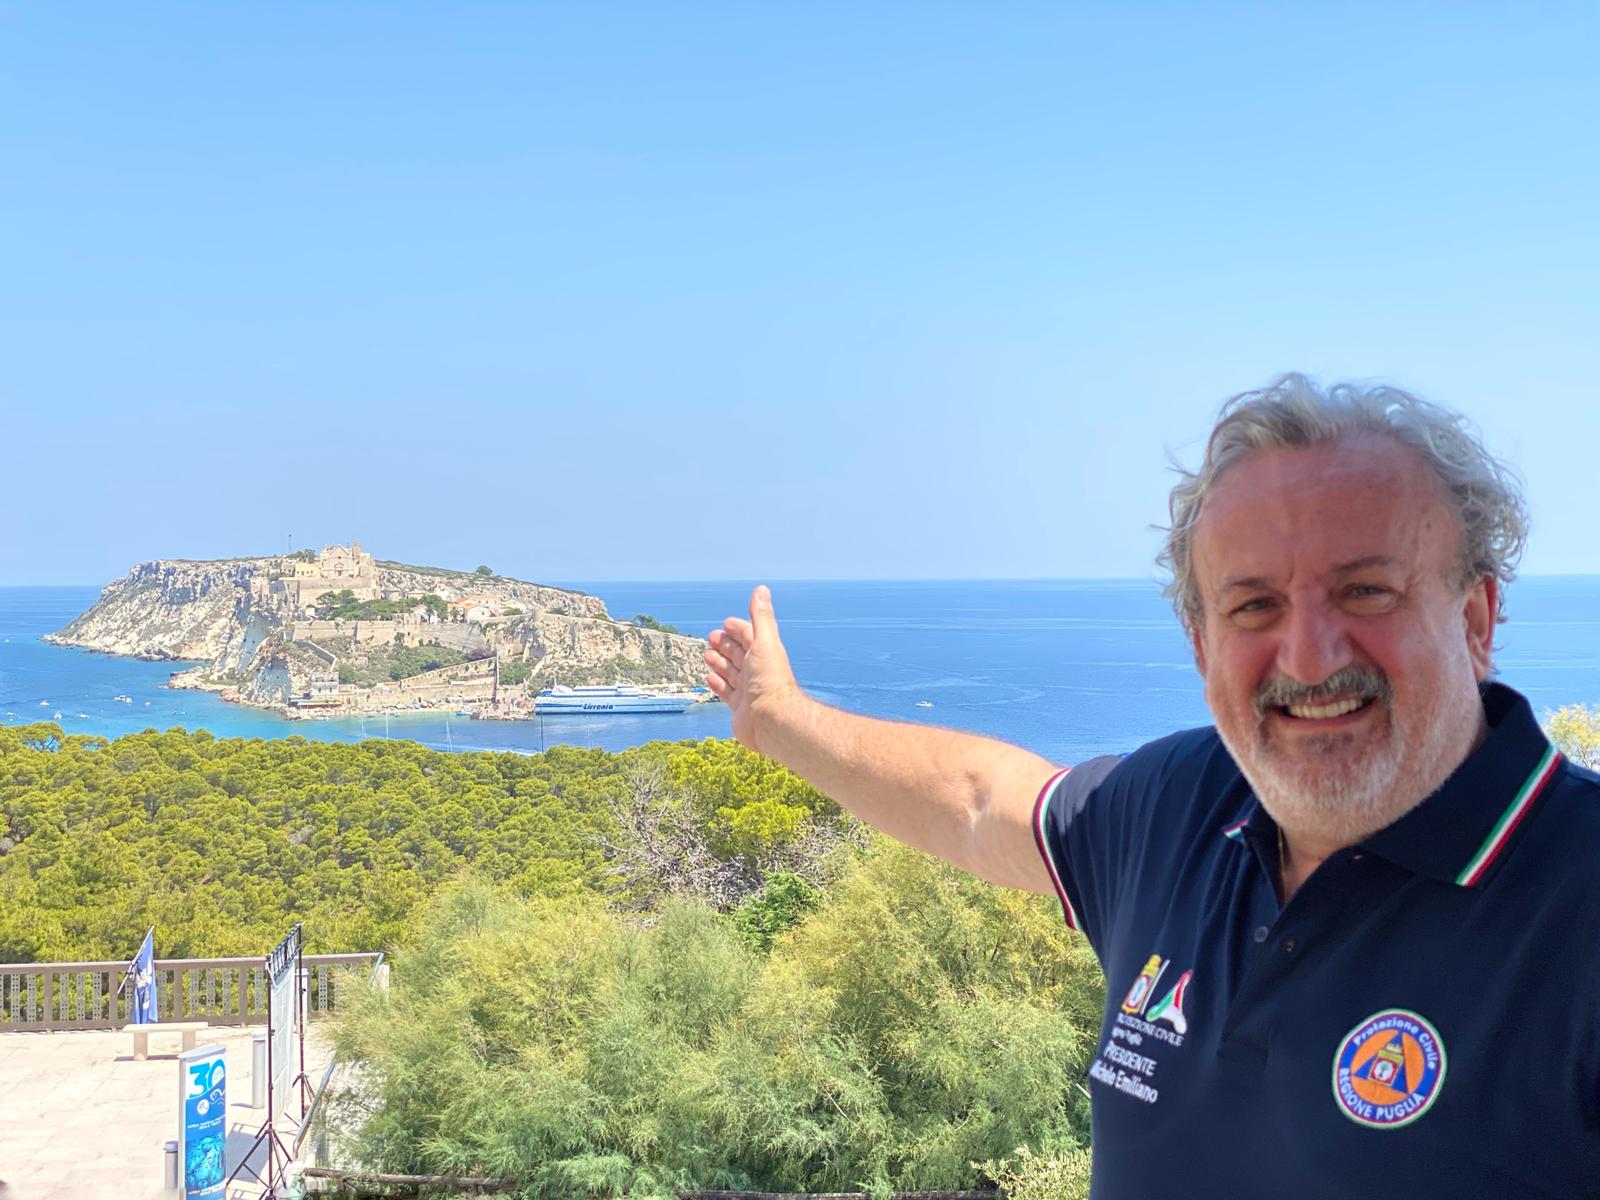 Galleria Bandiera Blu 2020 alle Isole Tremiti  Emiliano: “in Puglia grande risultato, siamo orgogliosi” - Diapositiva 7 di 8